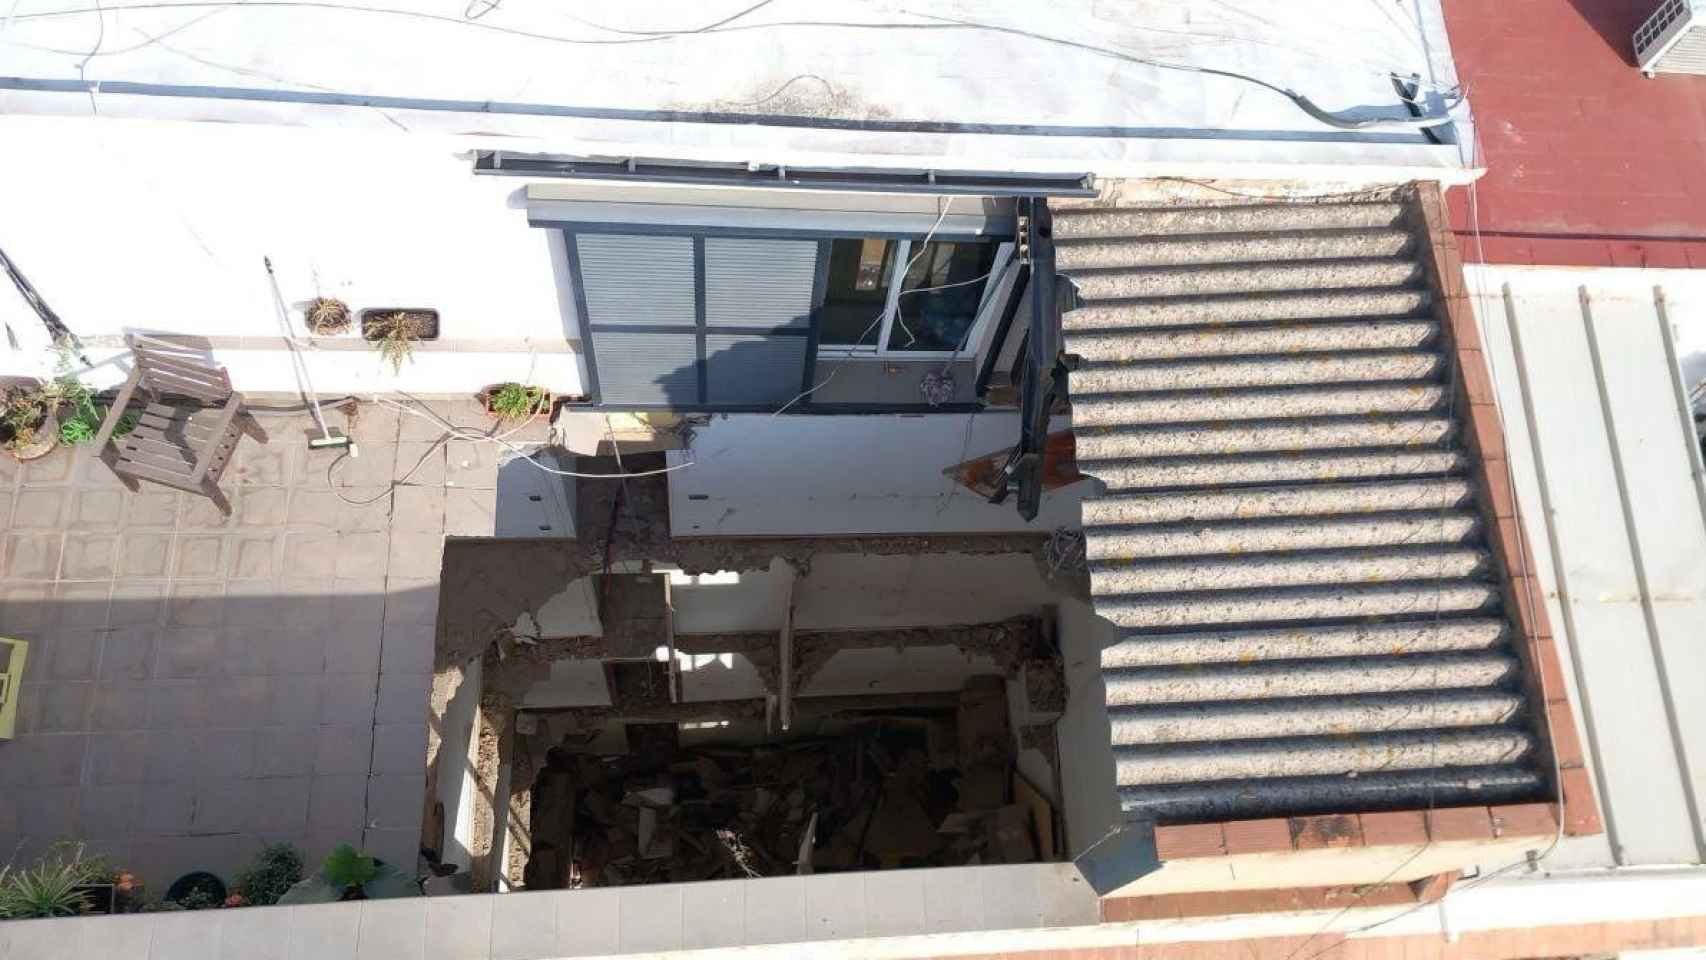 Colapso de la cubierta del ático en el edificio derrumbado en Badalona